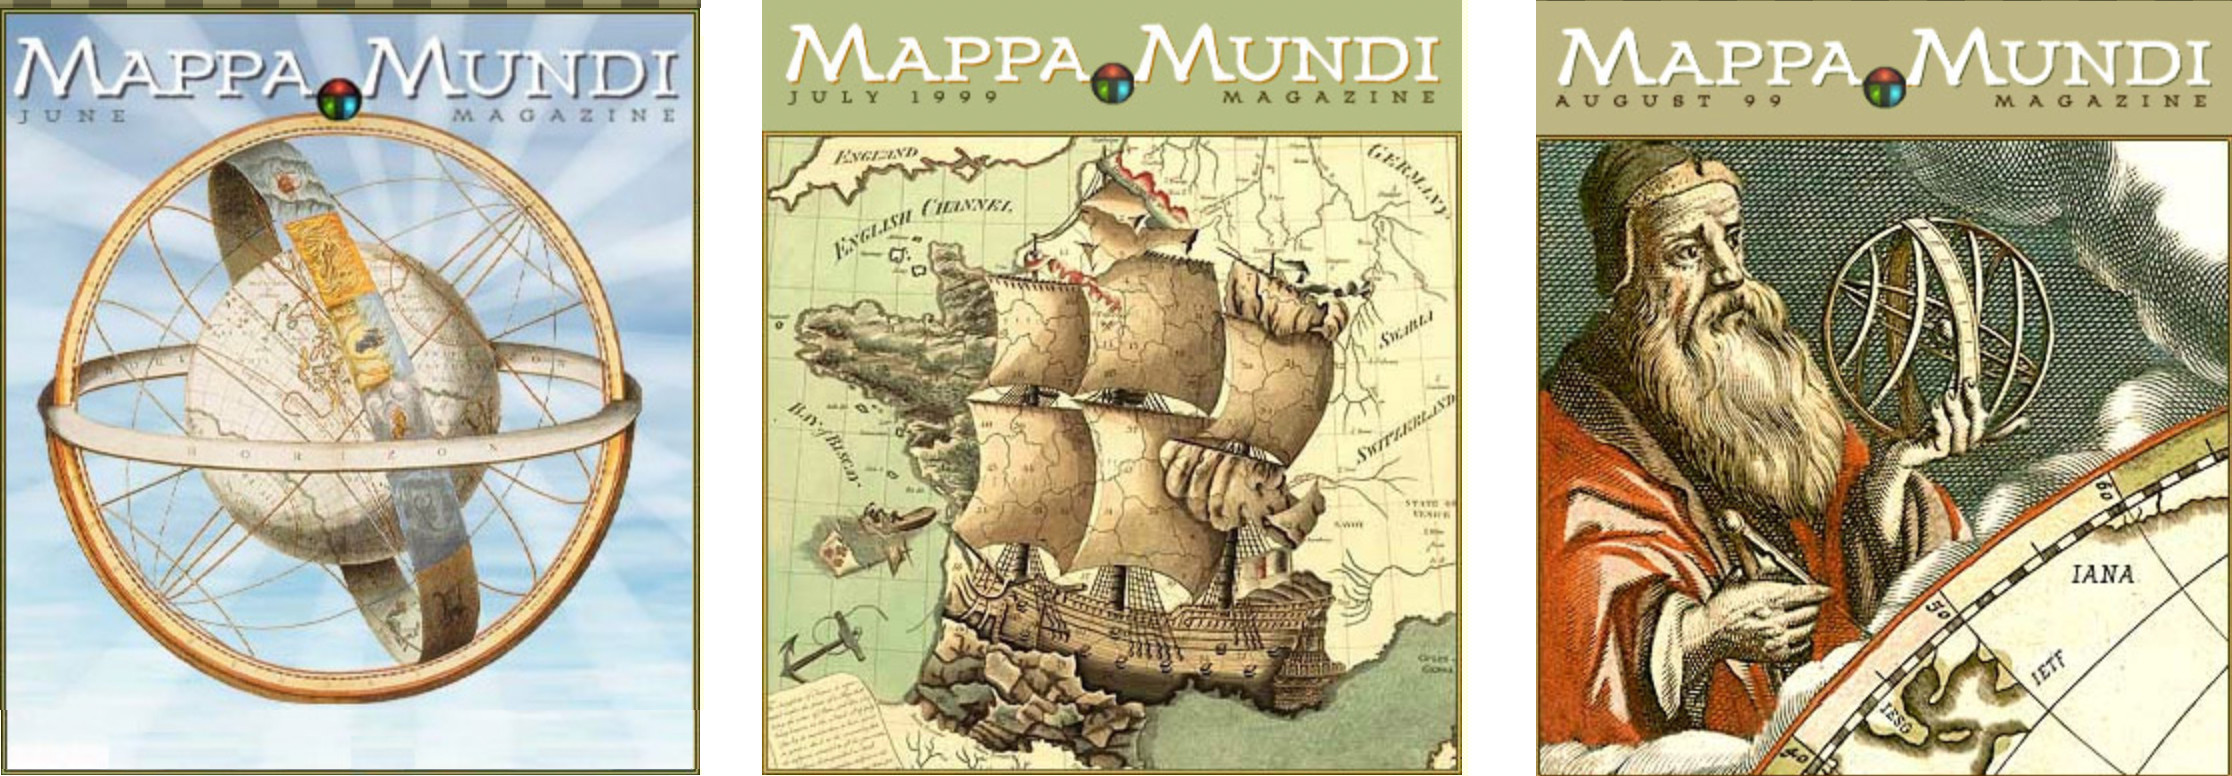 Mappa Mundi Covers